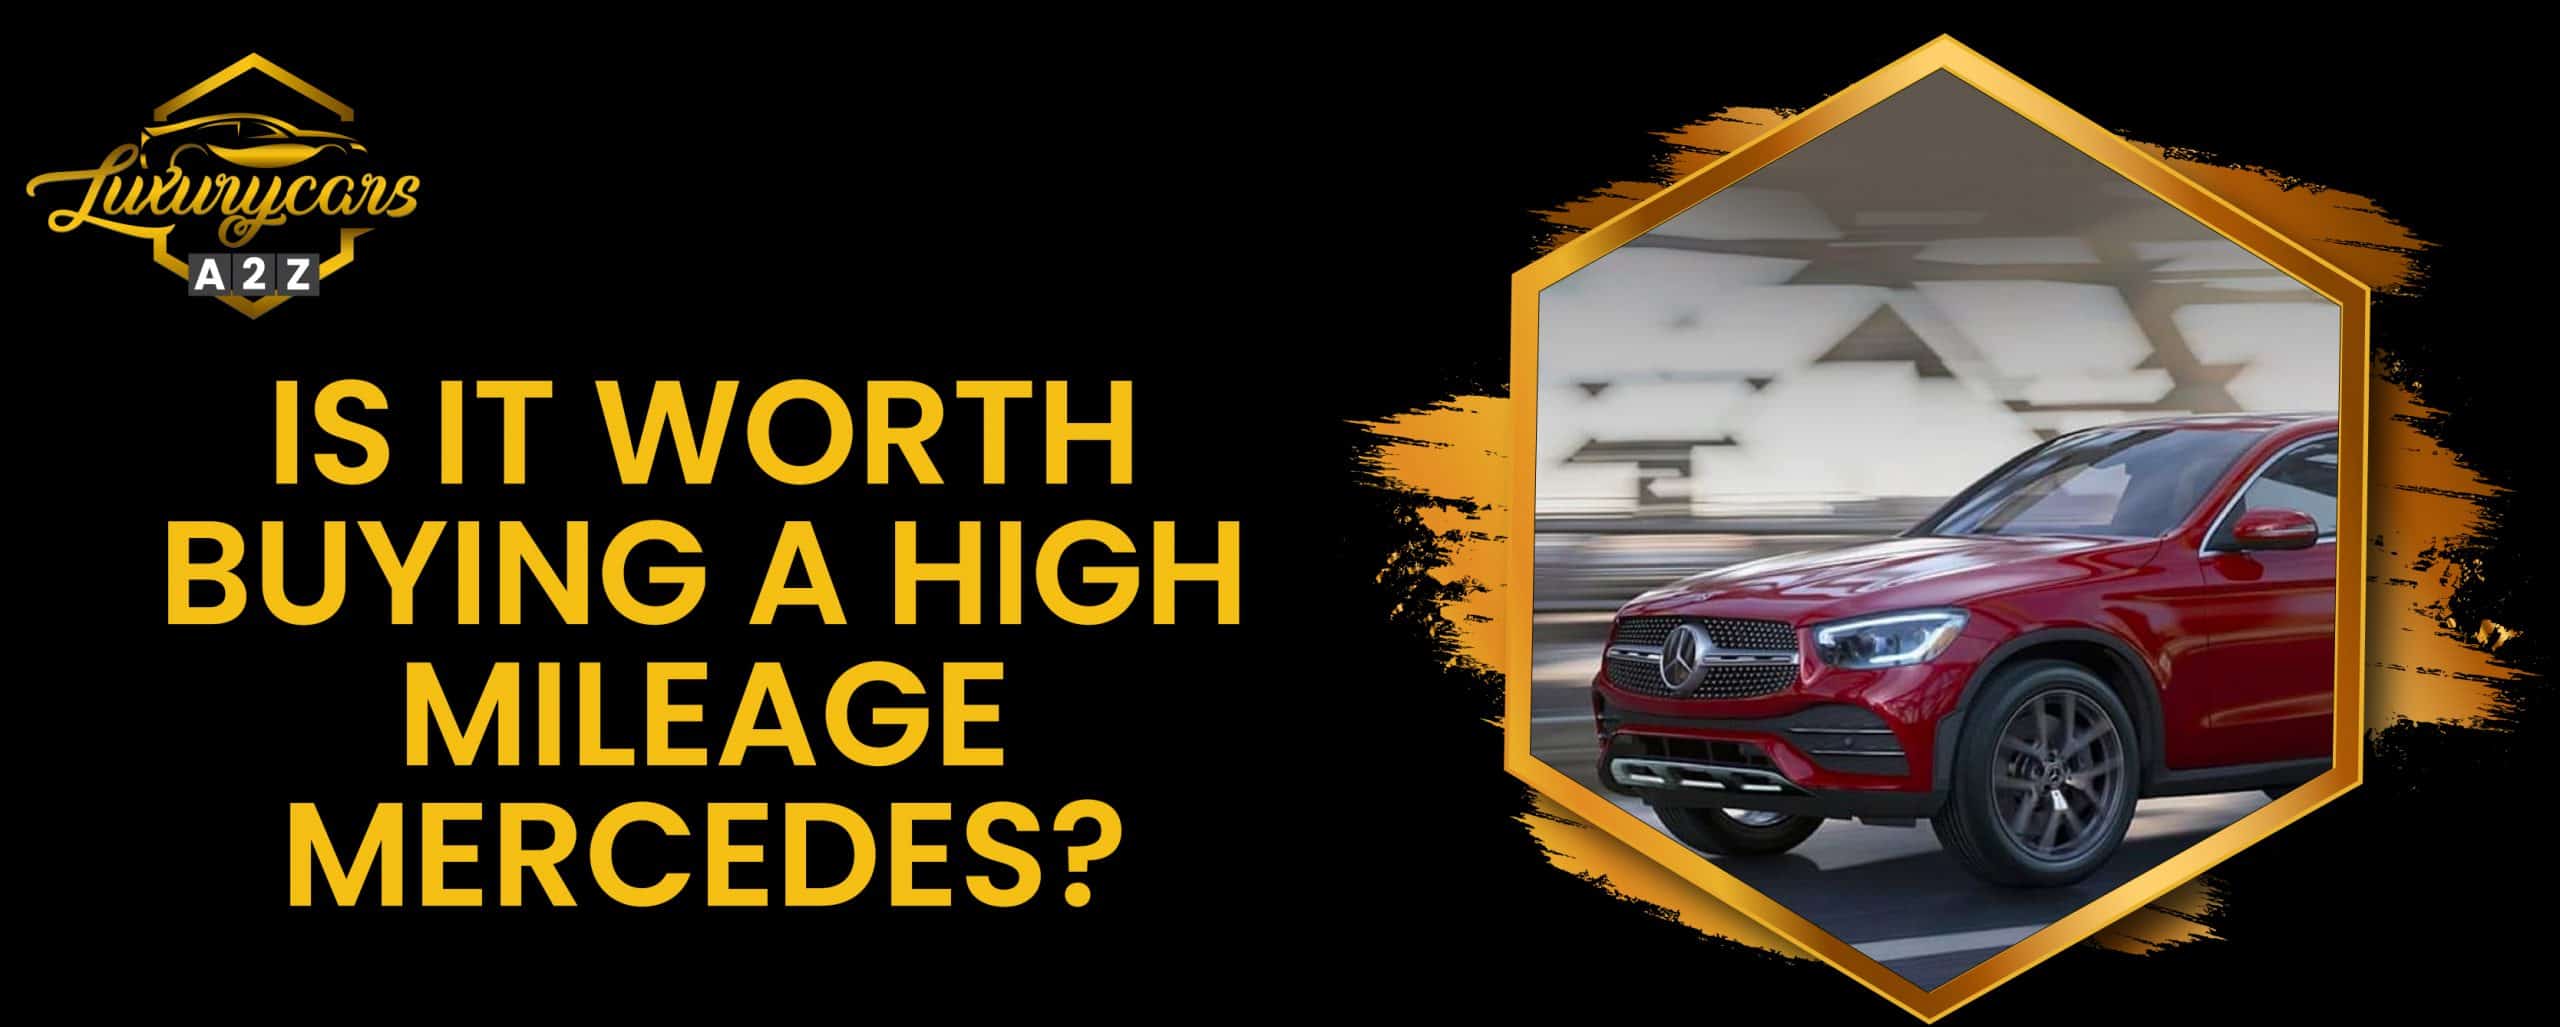 Cela vaut-il la peine d'acheter une Mercedes à haut kilométrage ?